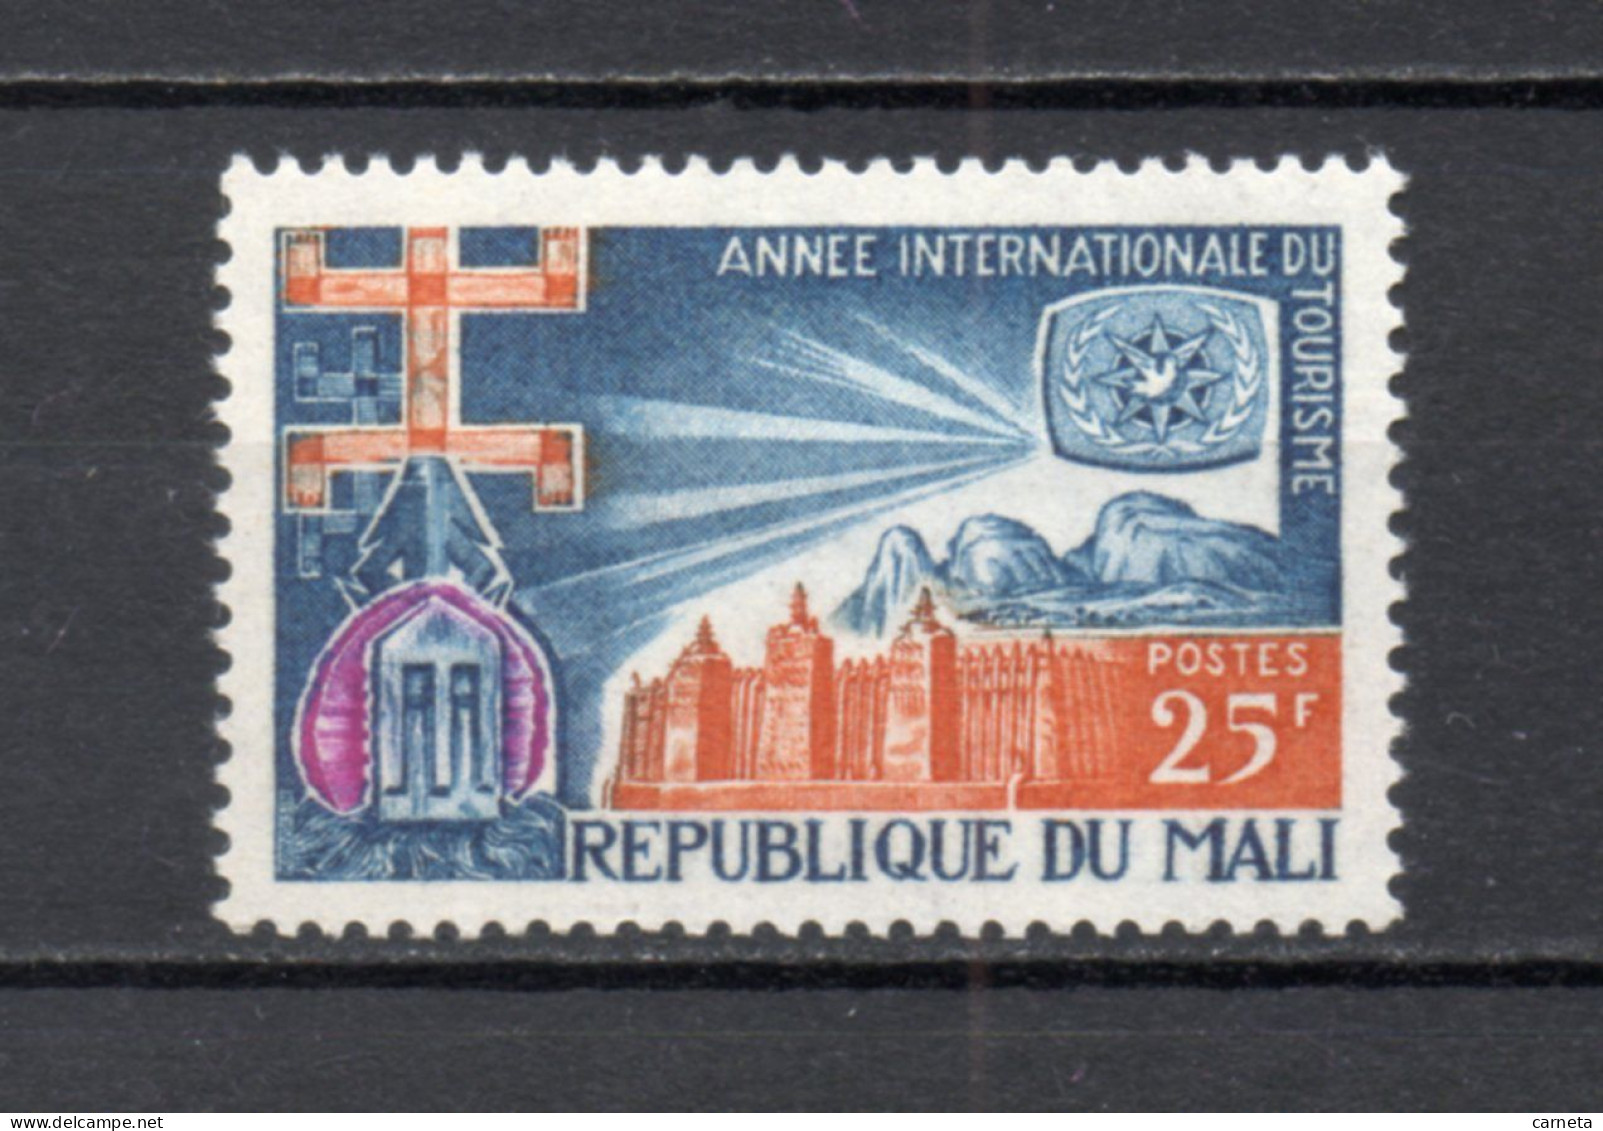 MALI  N° 100  NEUF SANS CHARNIERE  COTE 1.00€   TOURISME - Mali (1959-...)